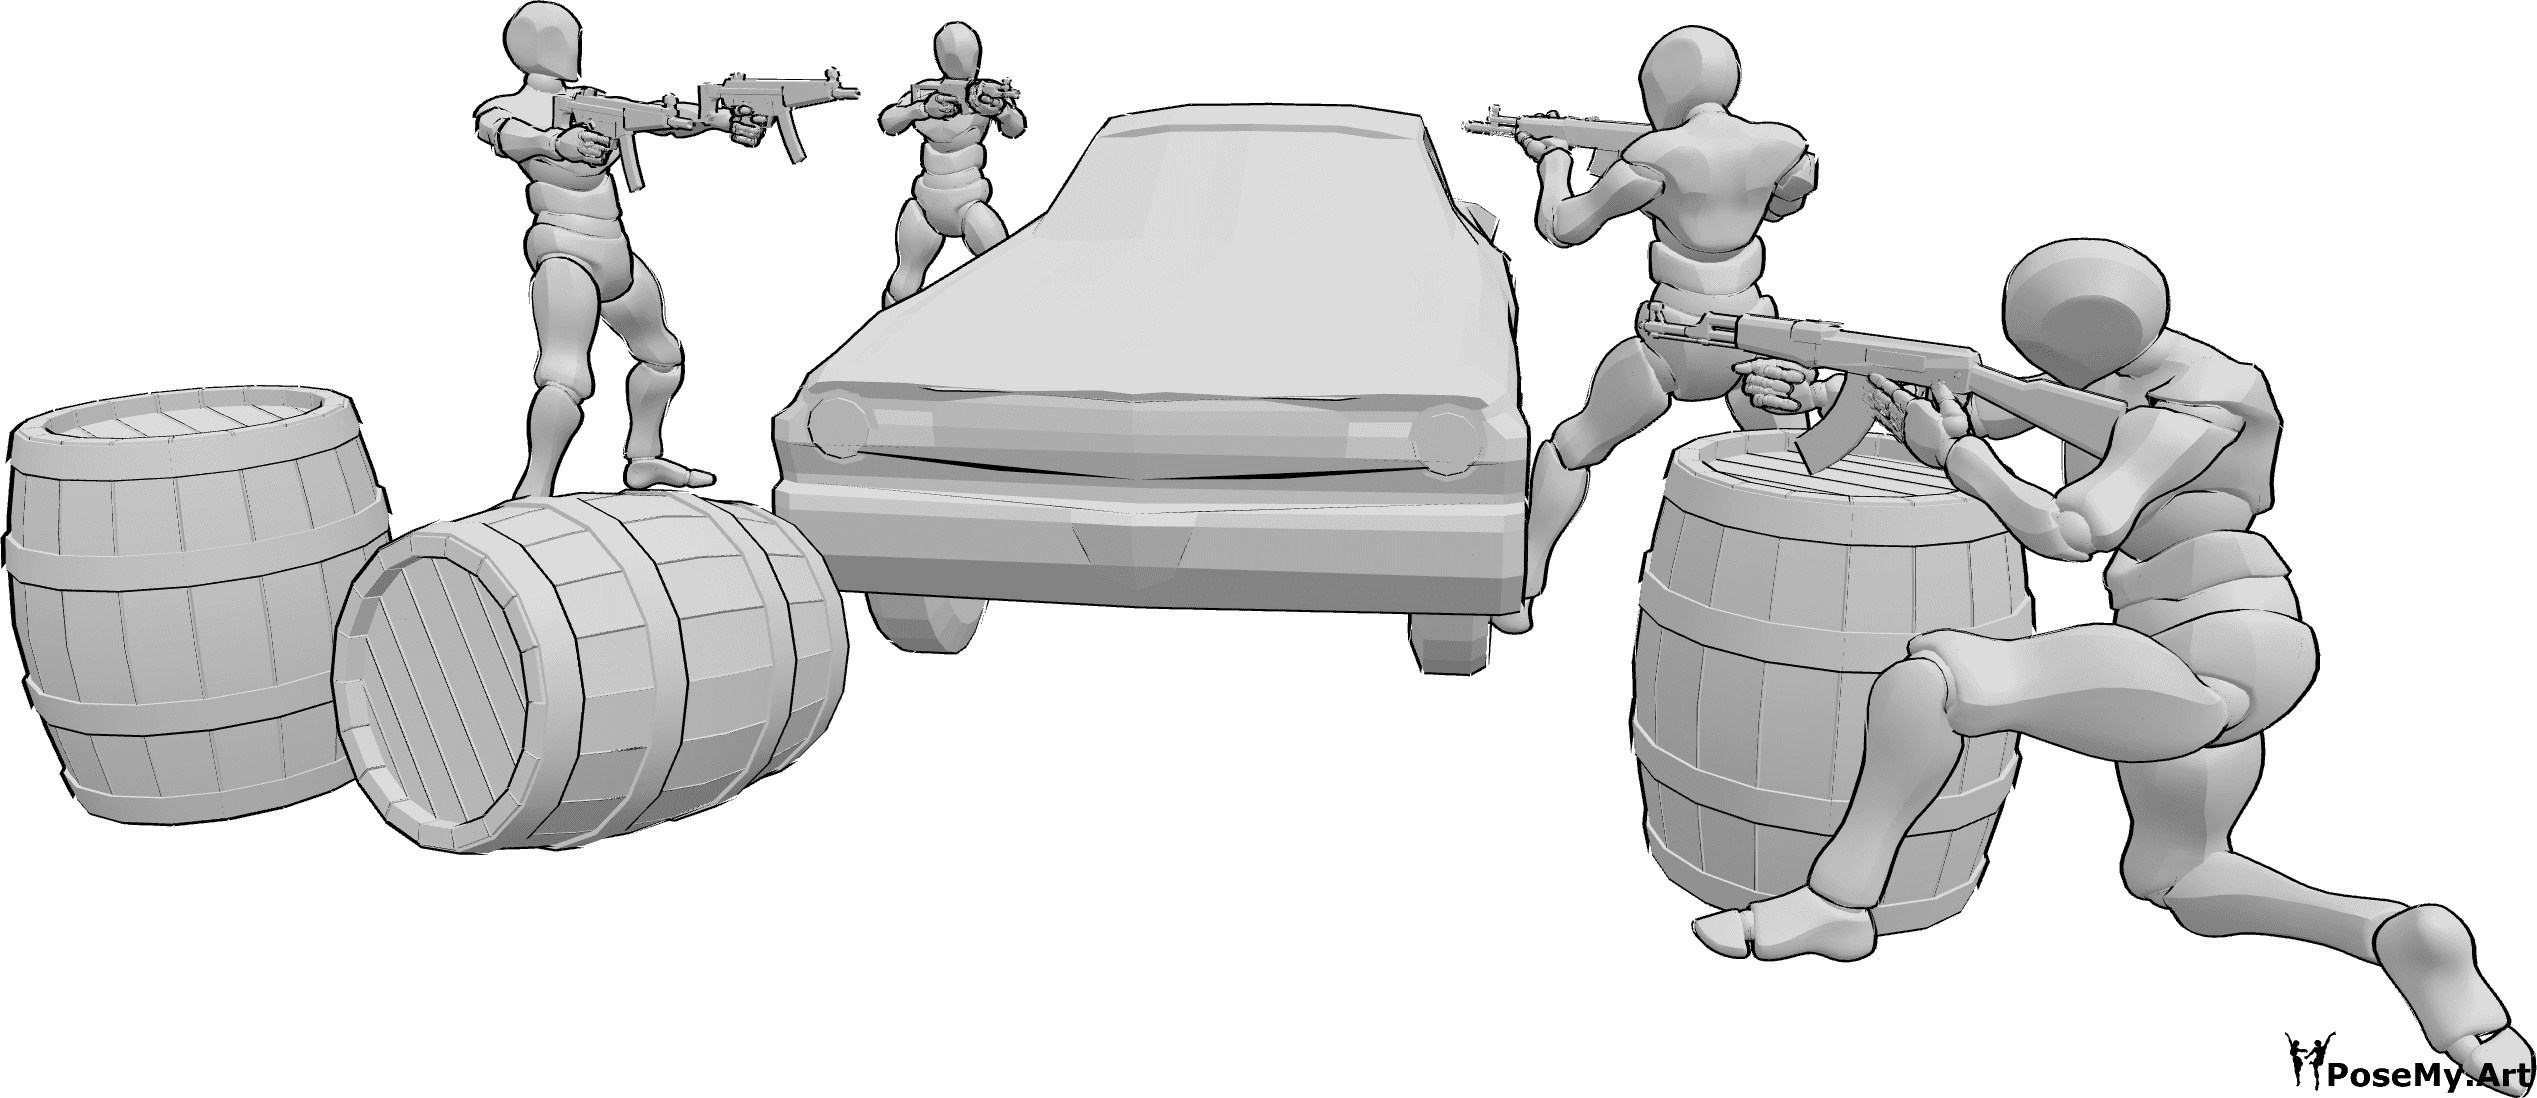 Posen-Referenz- Vier Männchen kämpfen in Pose - Vier bewaffnete Männer in einem Kampf, die hinter einem Auto und Fässern in Deckung gehen